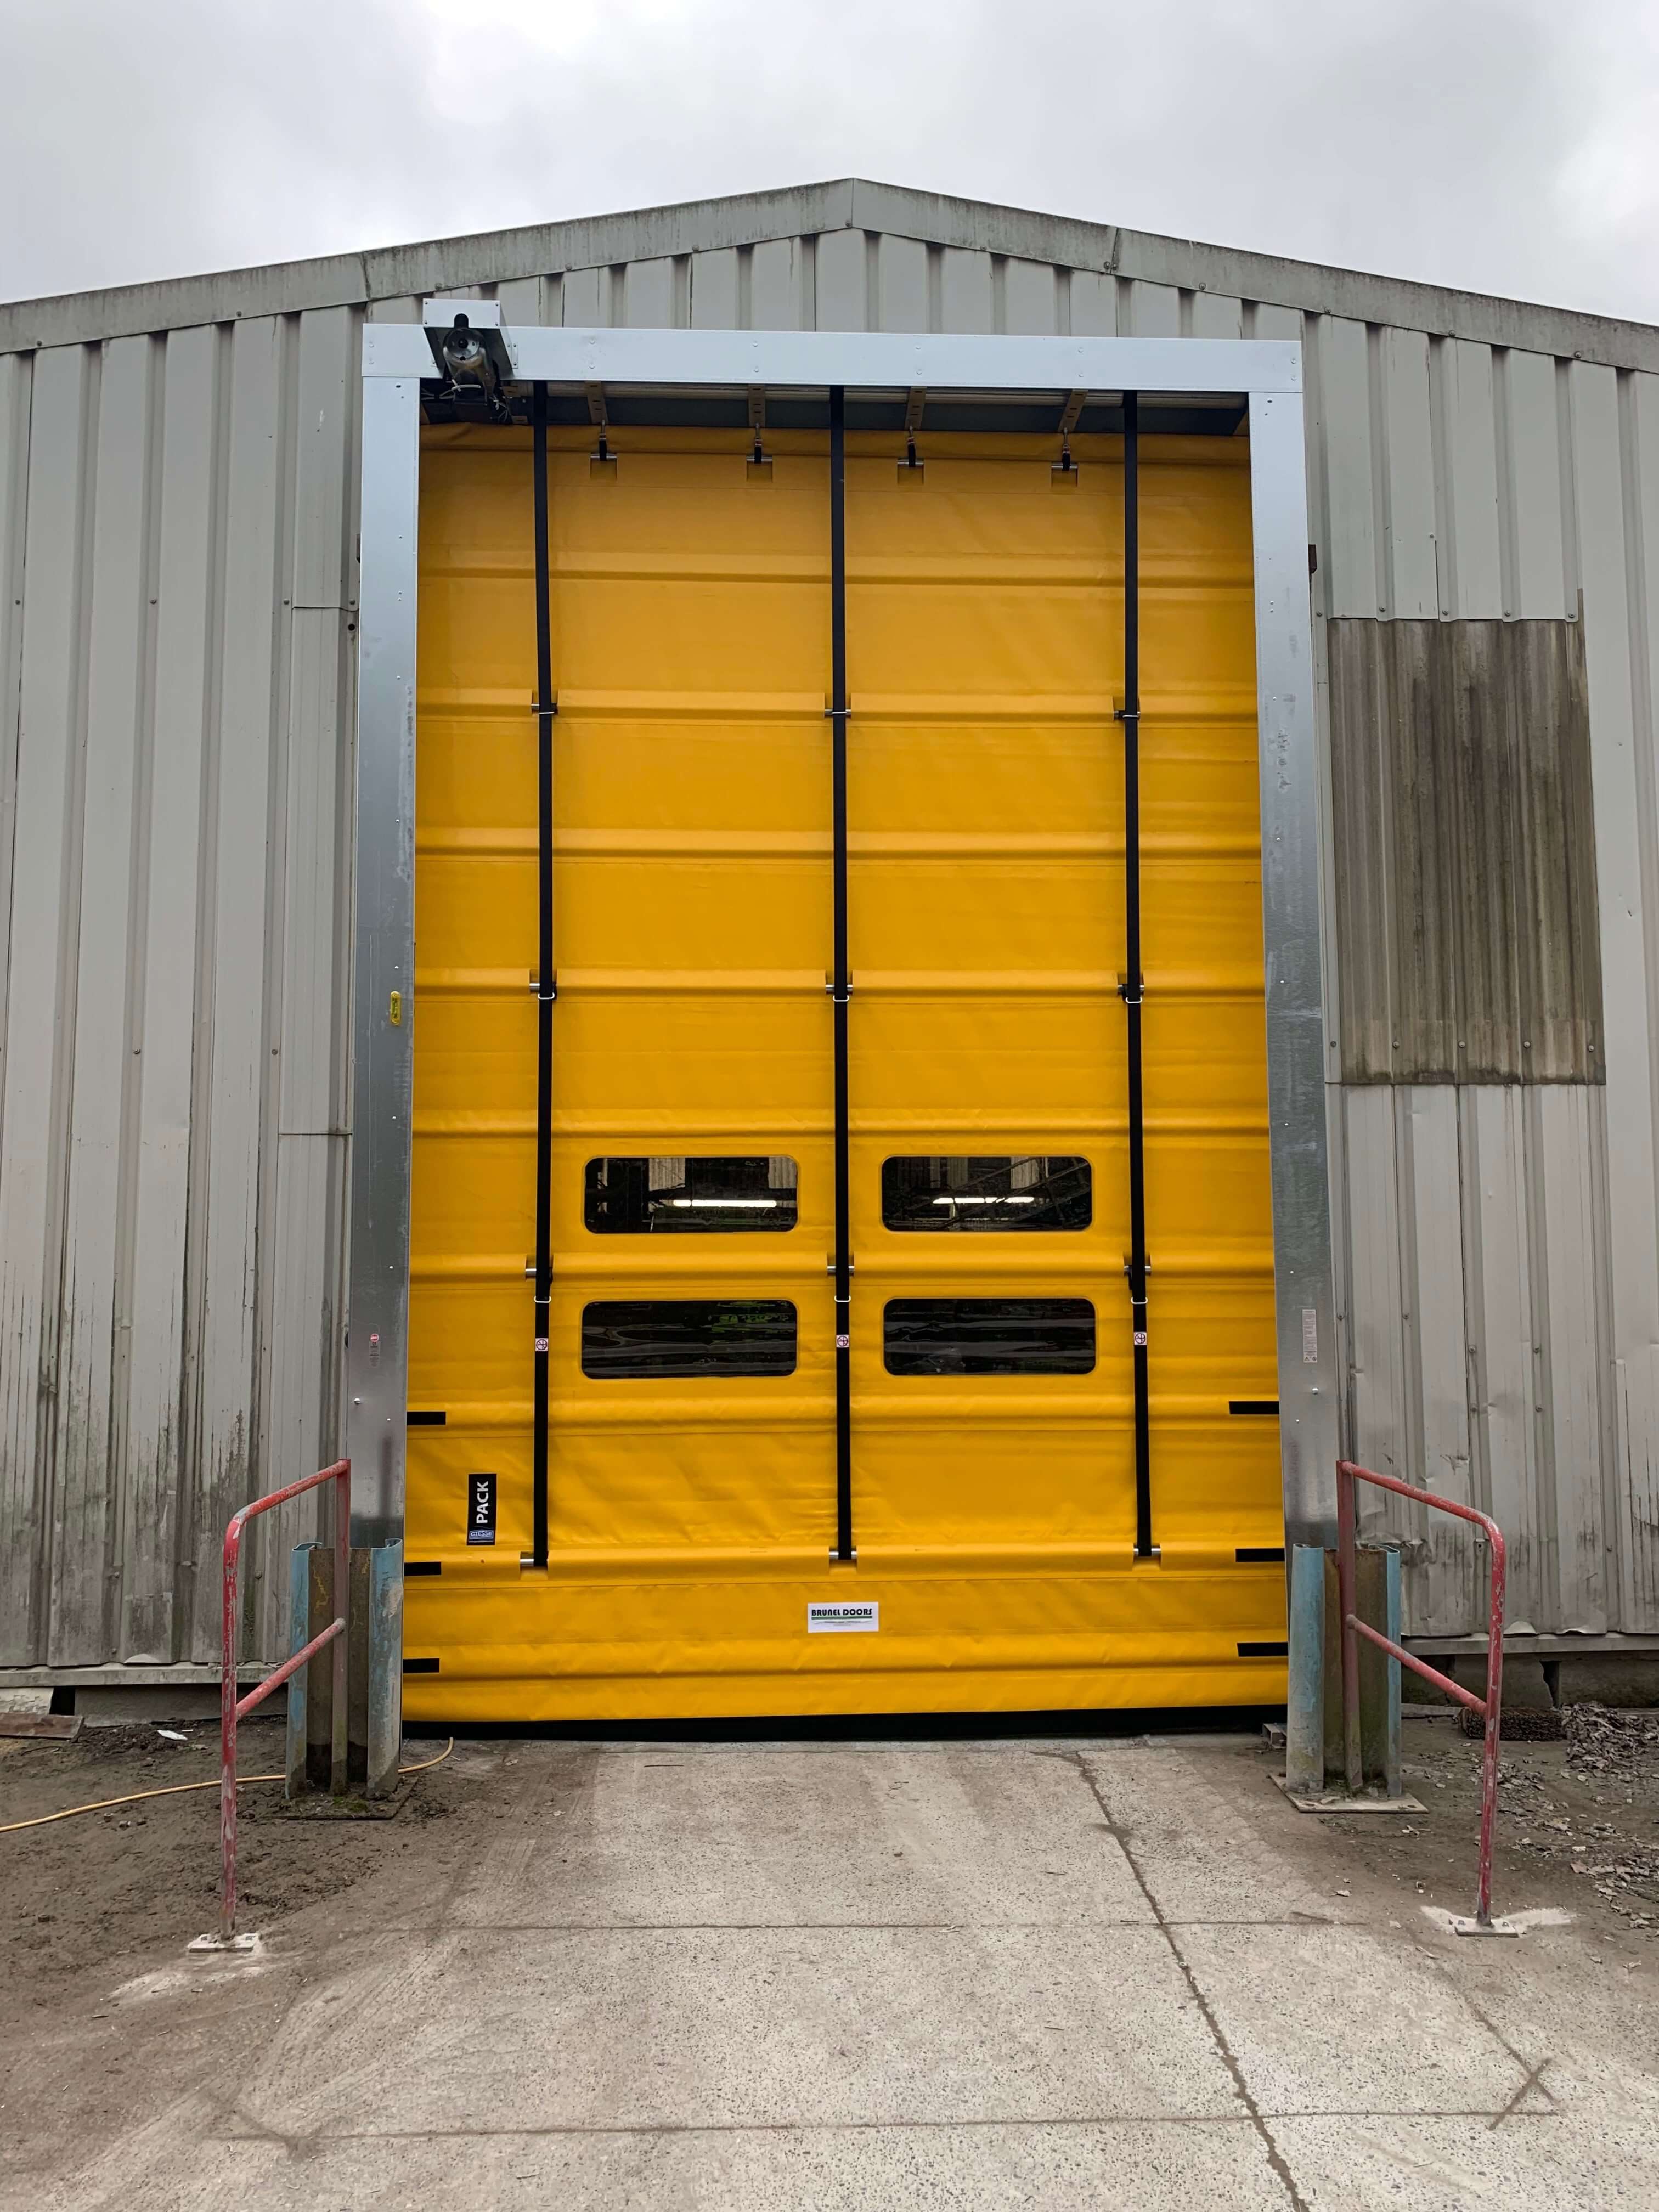 Large yellow industrial doors